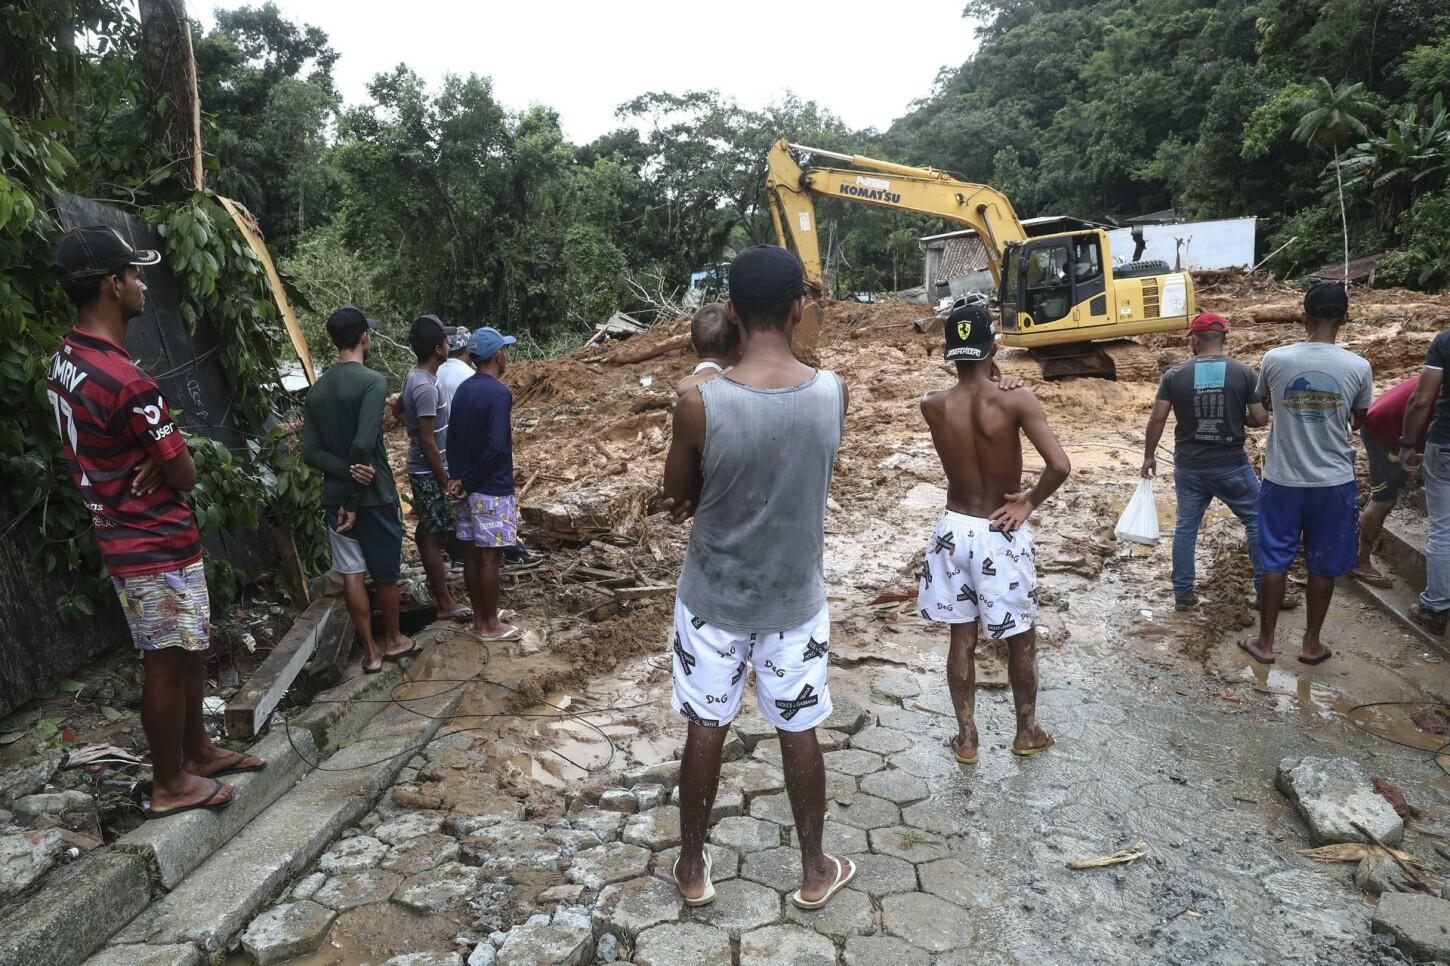 Las lluvias han dejado un rastro de destrucción en la región de Sao Paulo, Brasil, que ha obligado a más de 2.000 personas a abandonar sus hogares, además de los 36 fallecidos y 40 desaparecidos reportados hasta el momento, según el último balance oficial.